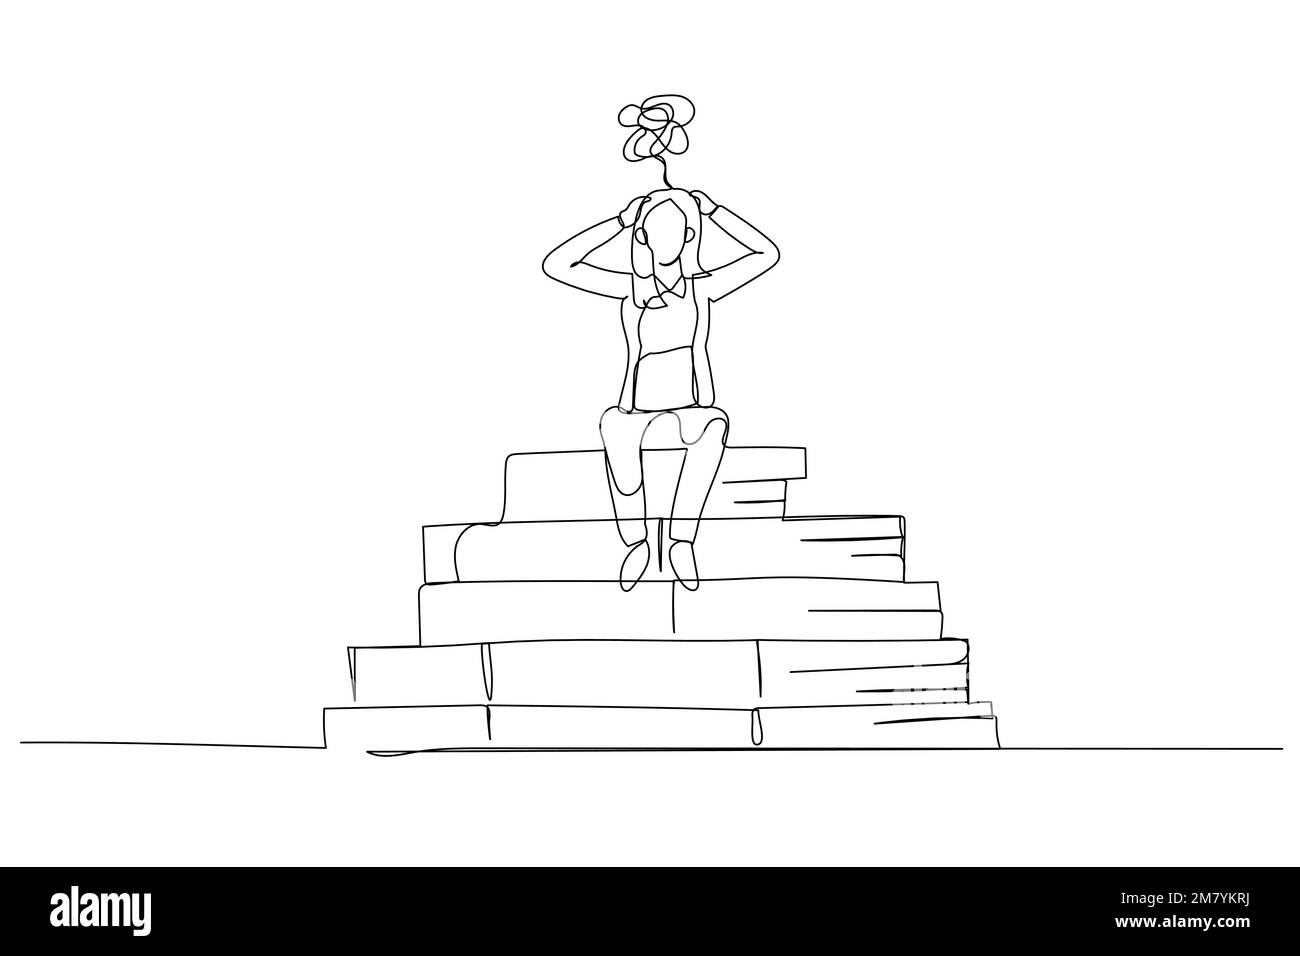 Cartone animato di donna d'affari sottolineato a causa della carta. Design di stile artistico a linea singola Illustrazione Vettoriale